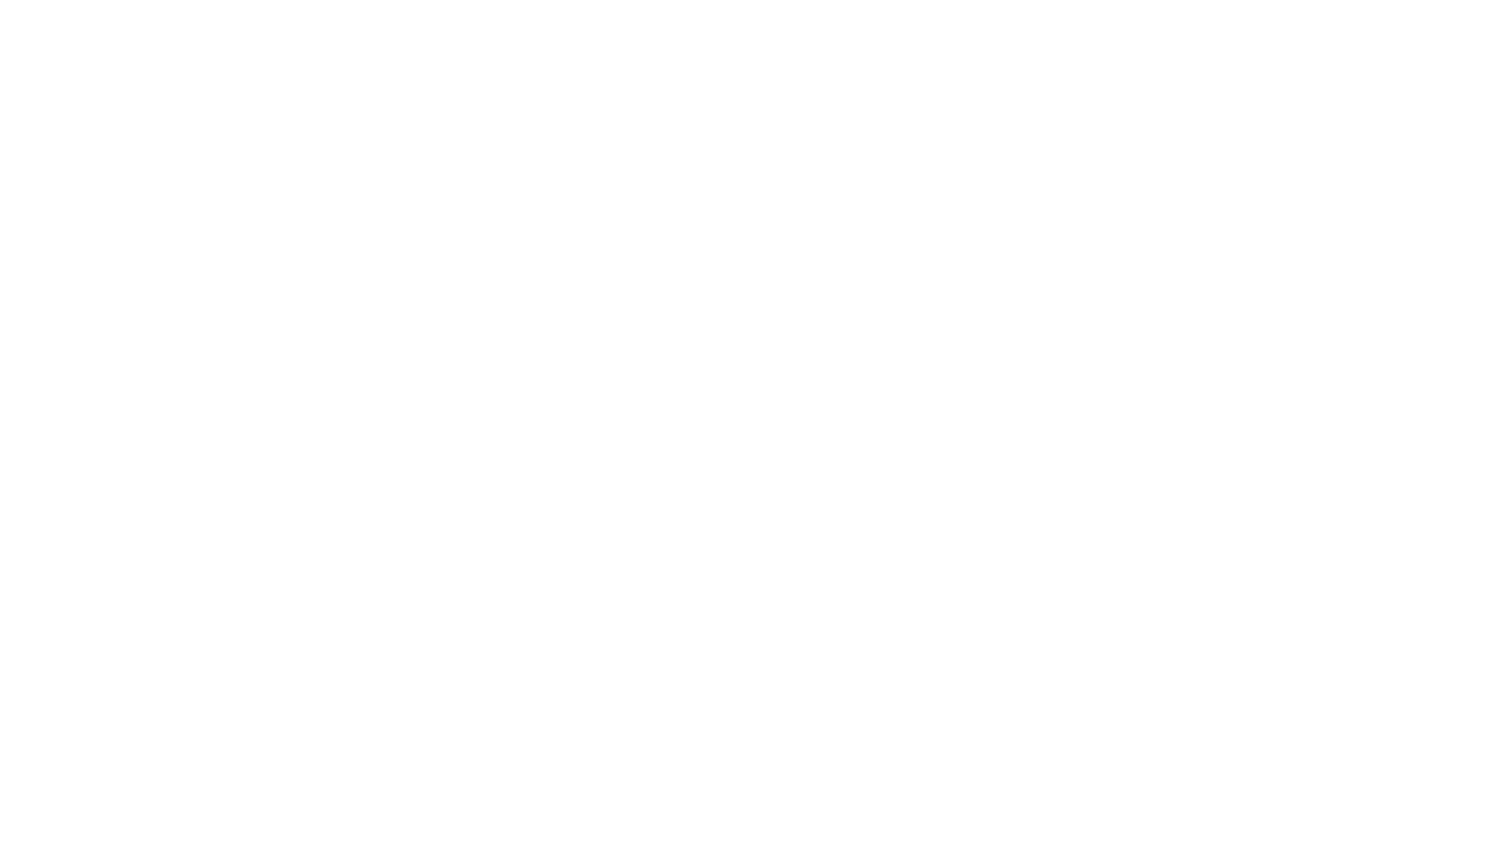 Verwaltung Graf von der Schulenburg